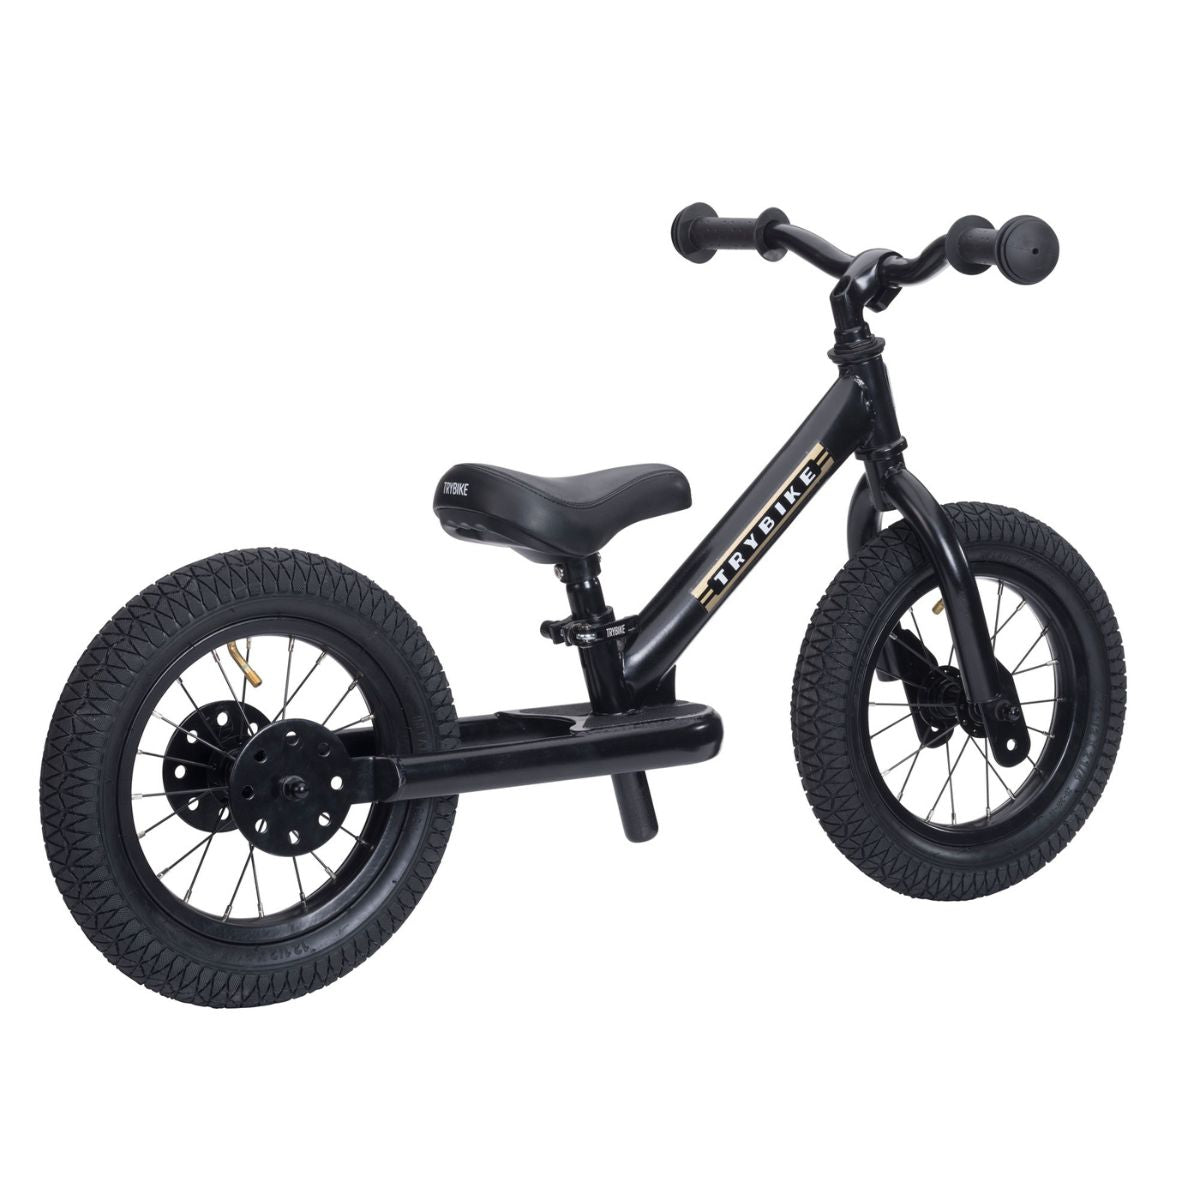 Bestel de Trybike steel 2-in-1 driewieler in de kleur all black en laat je kindje het plezier van fietsen ontdekken! Eenvoudig om te bouwen van een loopfiets naar een echte fiets. Duurzaam en veilig. VanZus